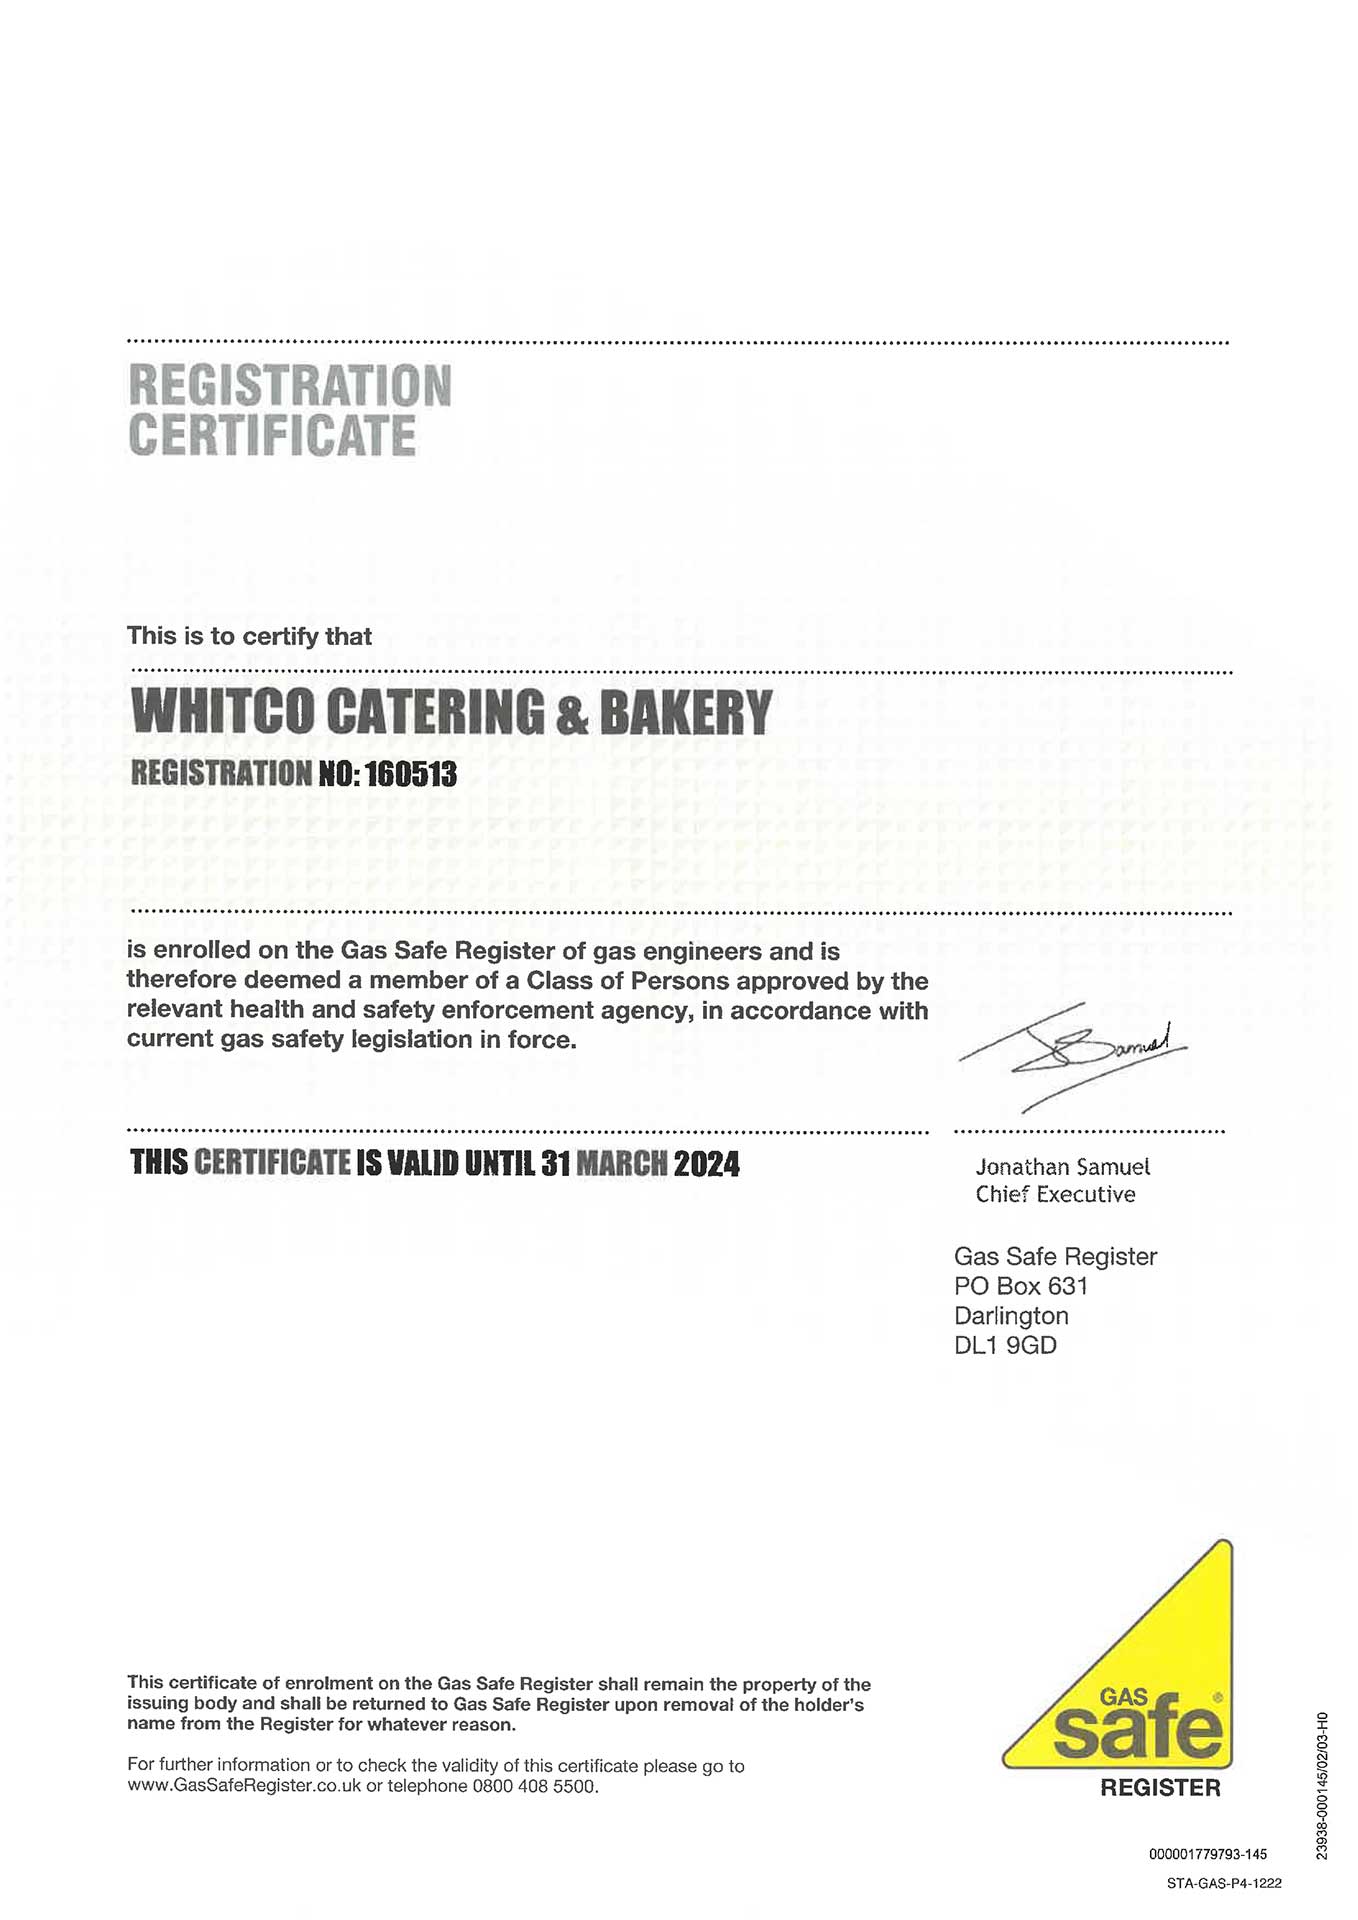 Gas Safe Registration Certificate